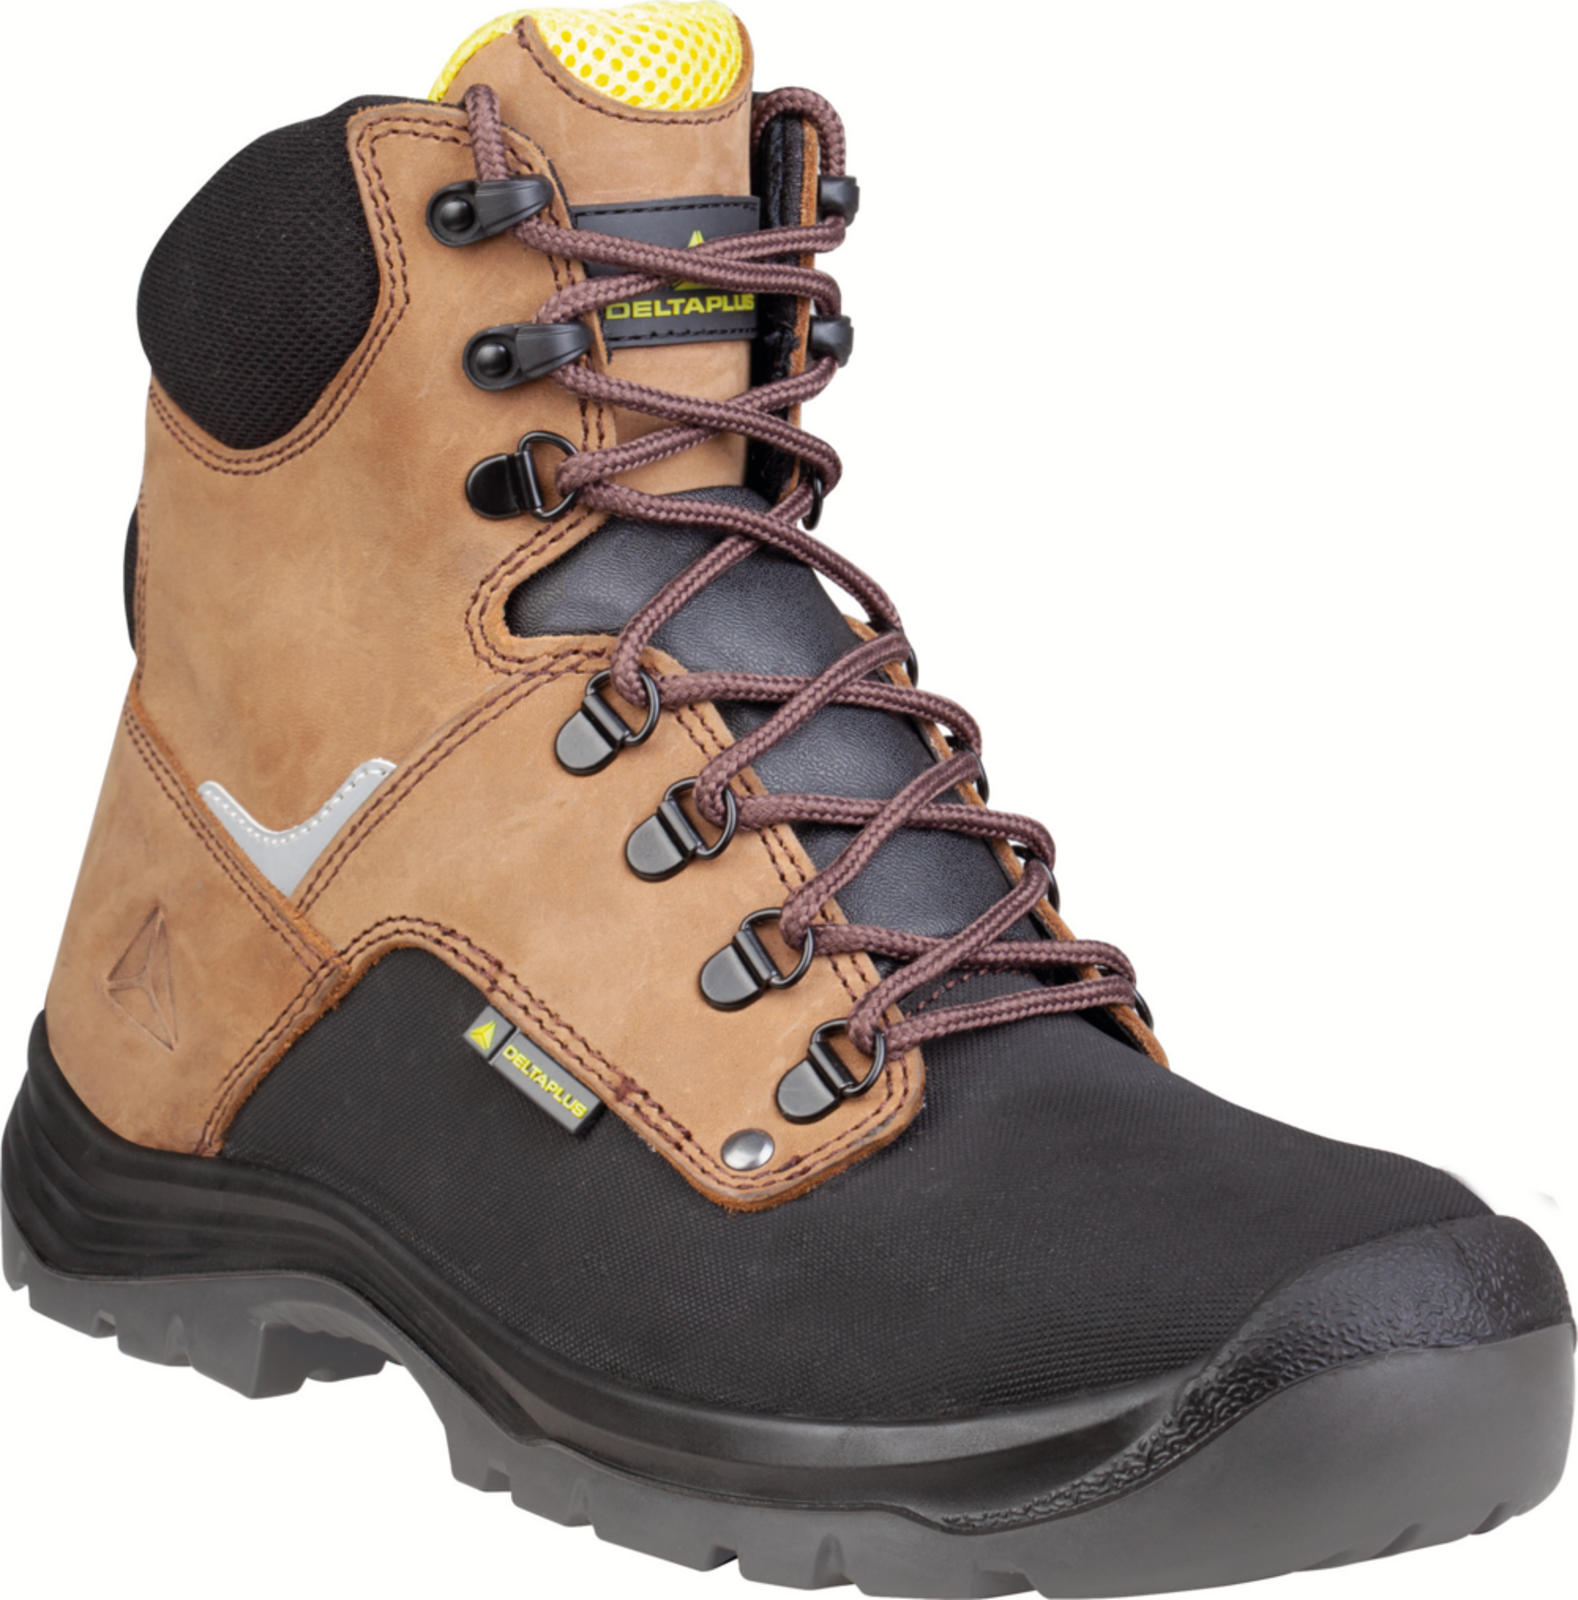 Vysoká bezpečnostná obuv Delta Plus Atacama S3 - veľkosť: 41, farba: hnedá/čierna